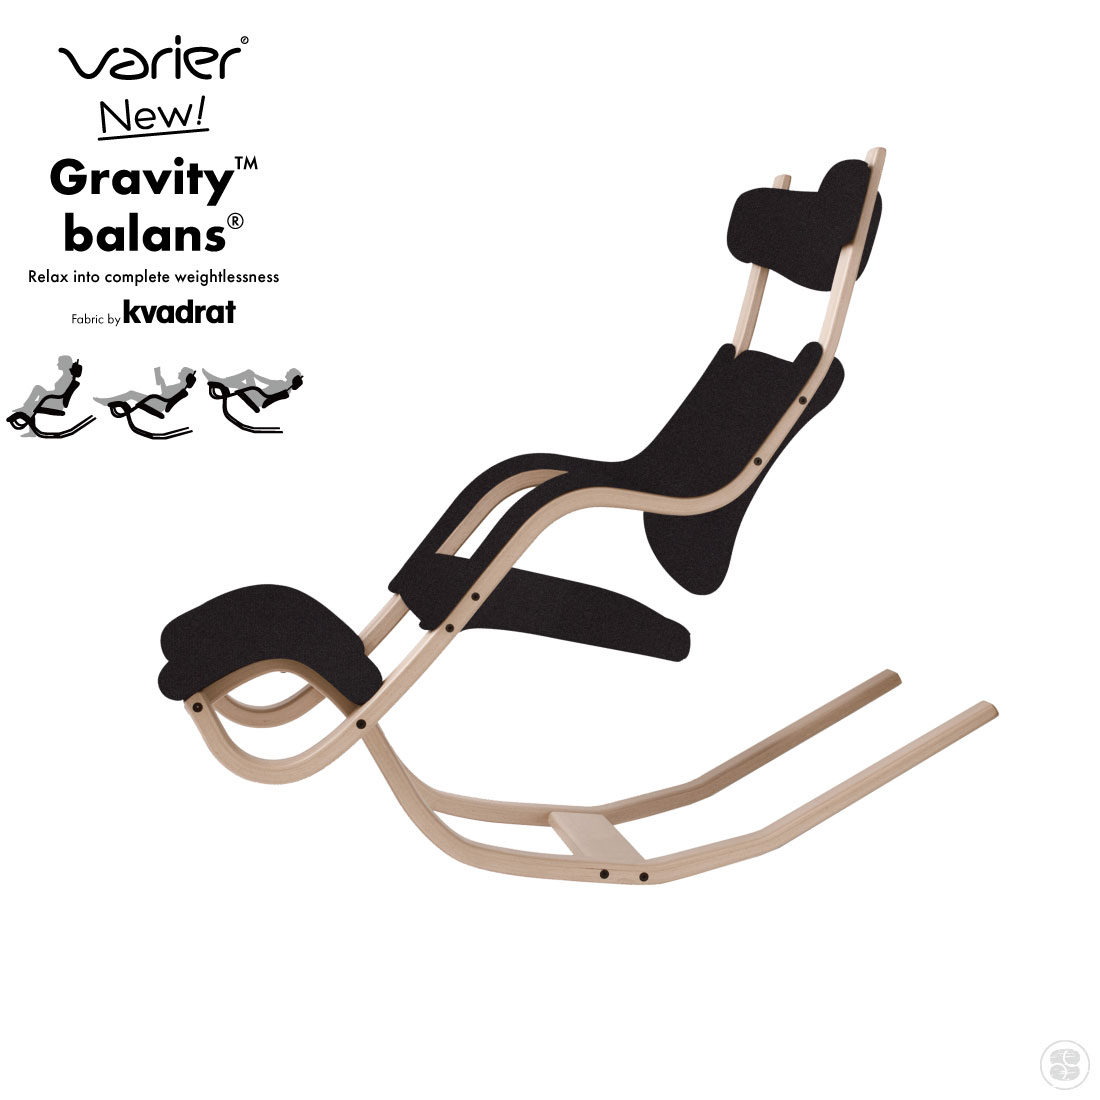 Varier/New Gravity Balans Chair Kvadrat社のReviveを使用してリニューアルしました。 4つのことなるスタイルで座ることのできるGravity（グラビティ）は今までのどのチェアにも なかった無重力＝Zero Gravity の感覚を得られる唯一のリクライニングチェアです。 わずかな体重移動により4つのどのスタイルにも簡単に動かせ、最も深く傾斜させると、脚と頭部が 心臓よりも高い位置にまで上がります。 このスタイルが心臓に血液を戻すサポートとなり全身の血流がよくなることで、心身ともに 深い休息を得られます。 人は動いているのが自然な状態であり長時間静止することはできません。 多様な座り方ができるグラビティは従来のリクライニングチェアでは得る事のできなかった 究極のリラックスを体感することができるでしょう。 サイズ 高さ：1220mm×幅：730mmx奥行き：1350mm / 約13.5kg / シート高さ：440mm 耐荷重 110kg 布地 リサイクルポリエステル100％ 備考 お客様組み立て品。 イメージ写真について イメージ写真には、該当商品以外の撮影小物なども写っておりますが、それらの小物は商品には含まれておりません。お間違いのないよう、ご注意くださいませ。 手工品の場合 商品がハンドメイドの場合、個体差が生じる場合がございますが、いずれも良品です。色や形、2つとないハンドメイドの良さをお楽しみください。